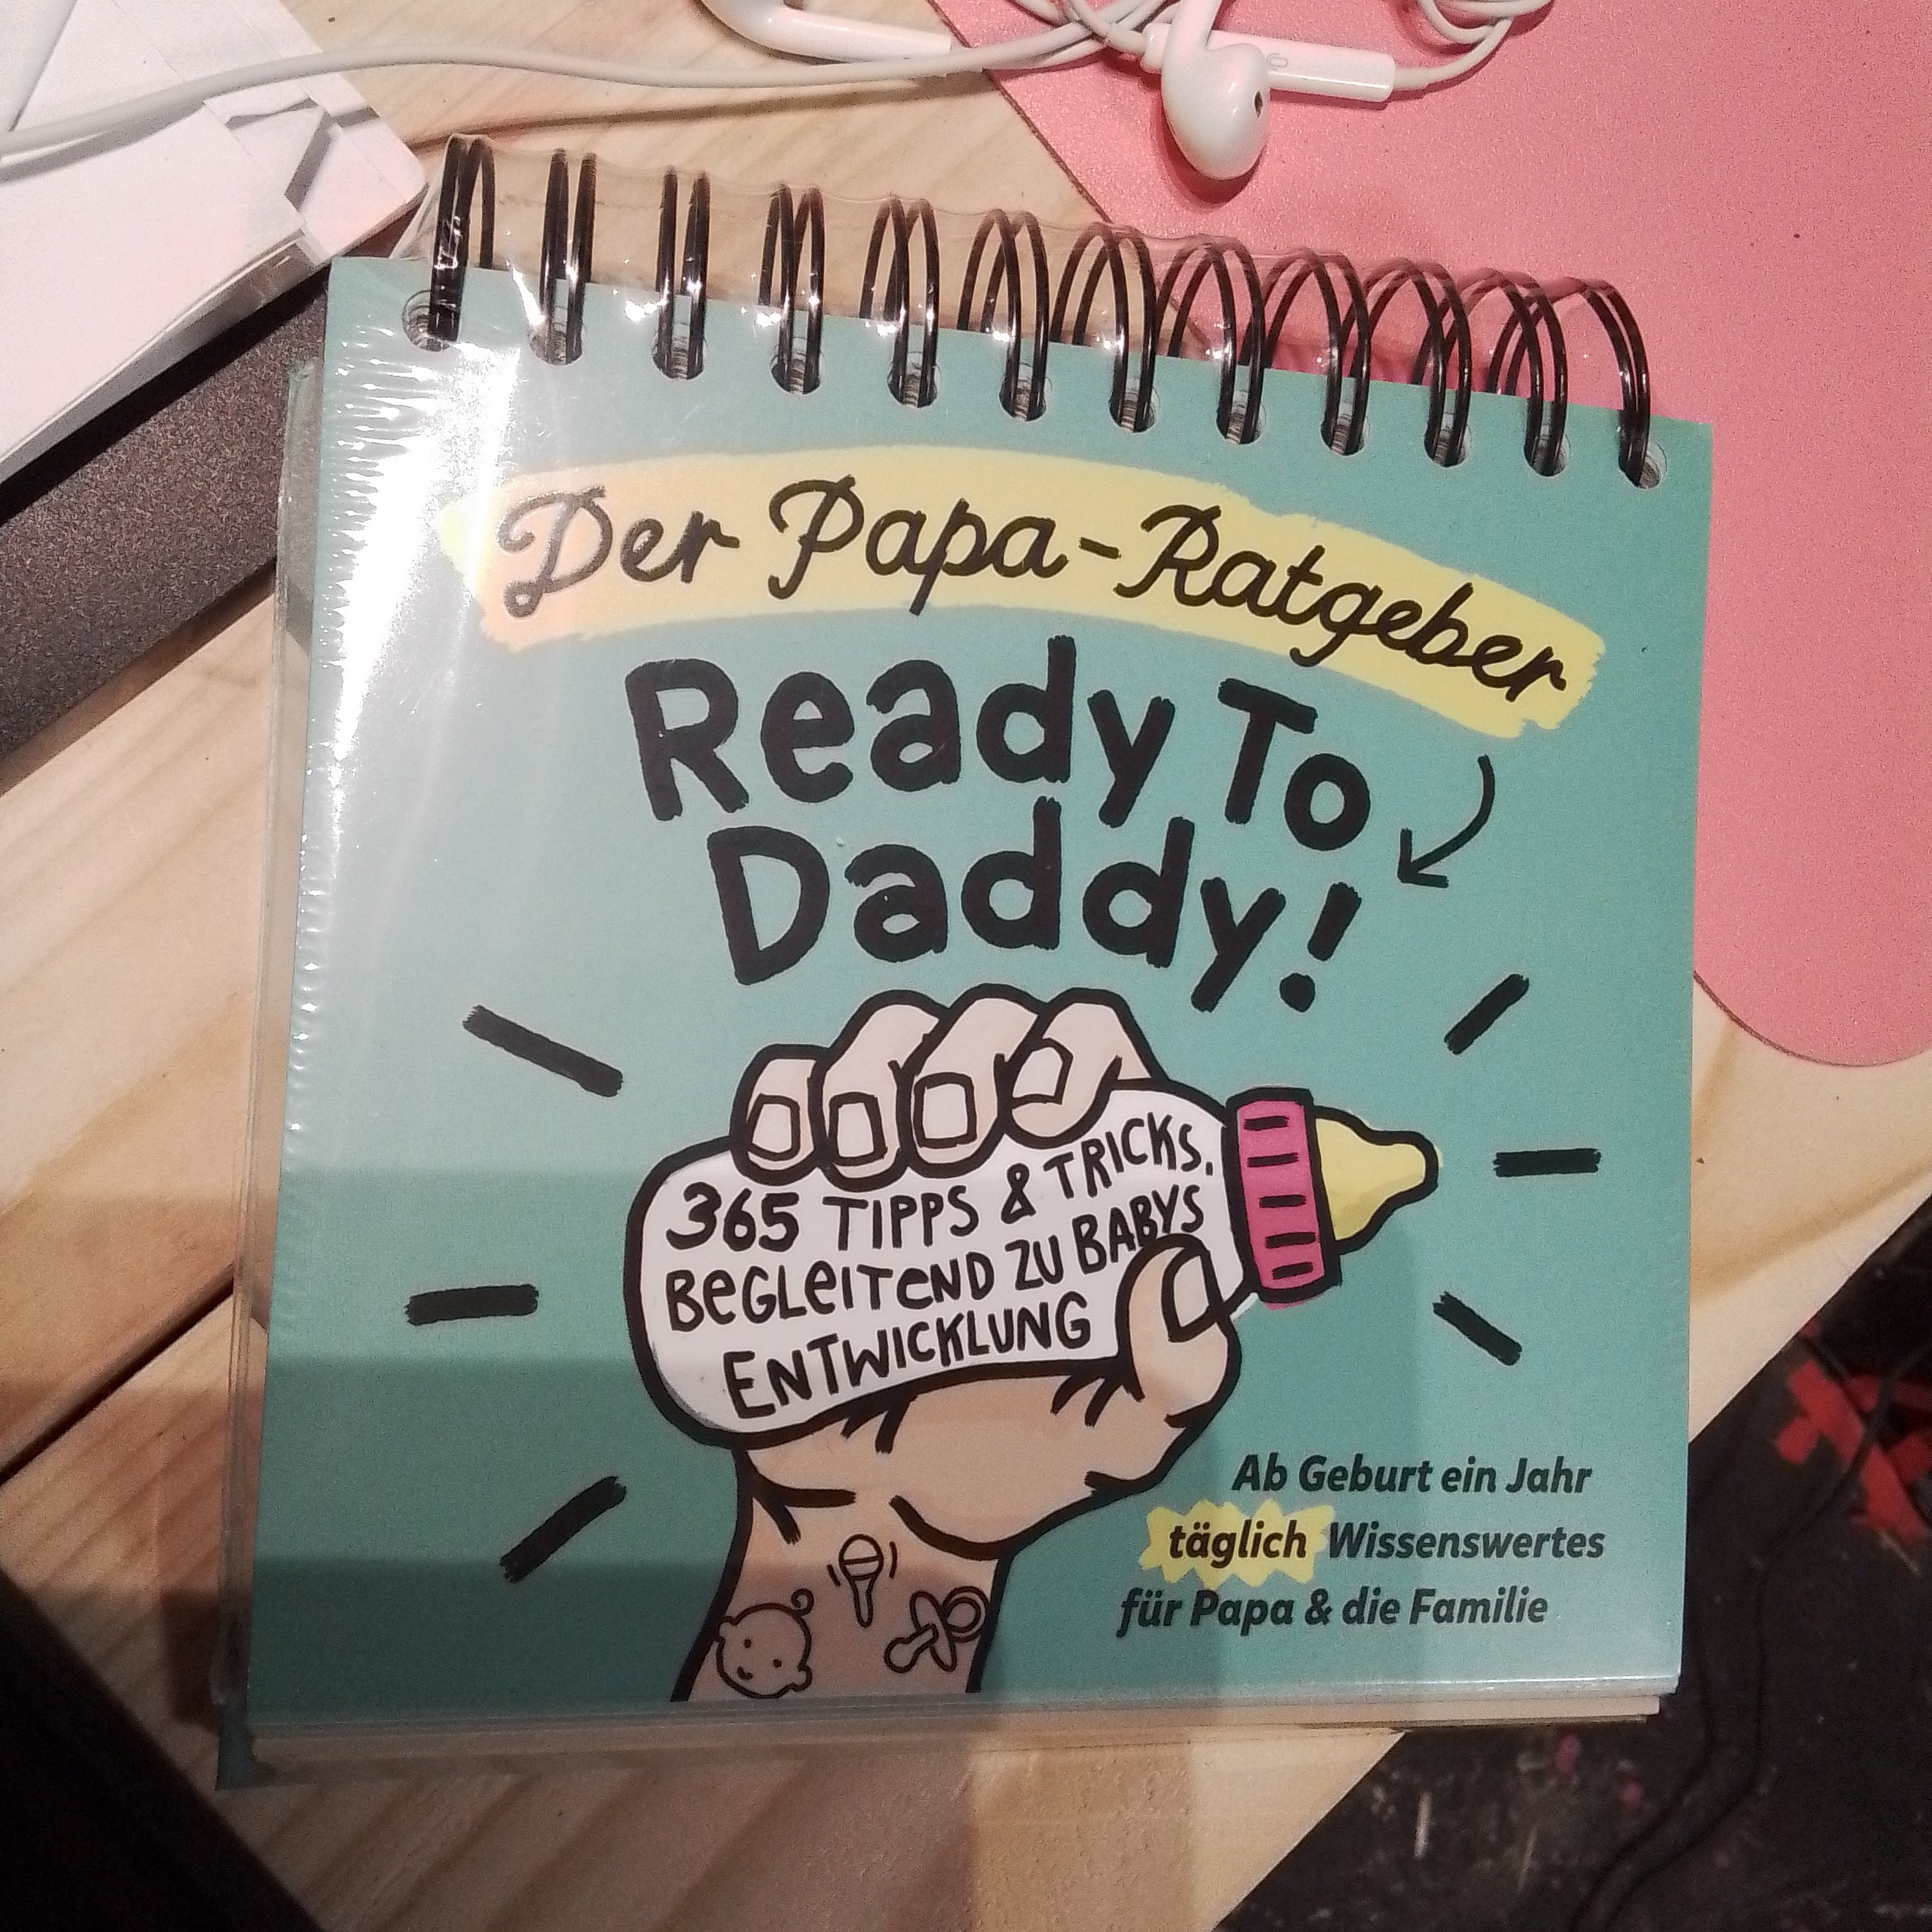 Der Papa Rargeber Ready to Daddy